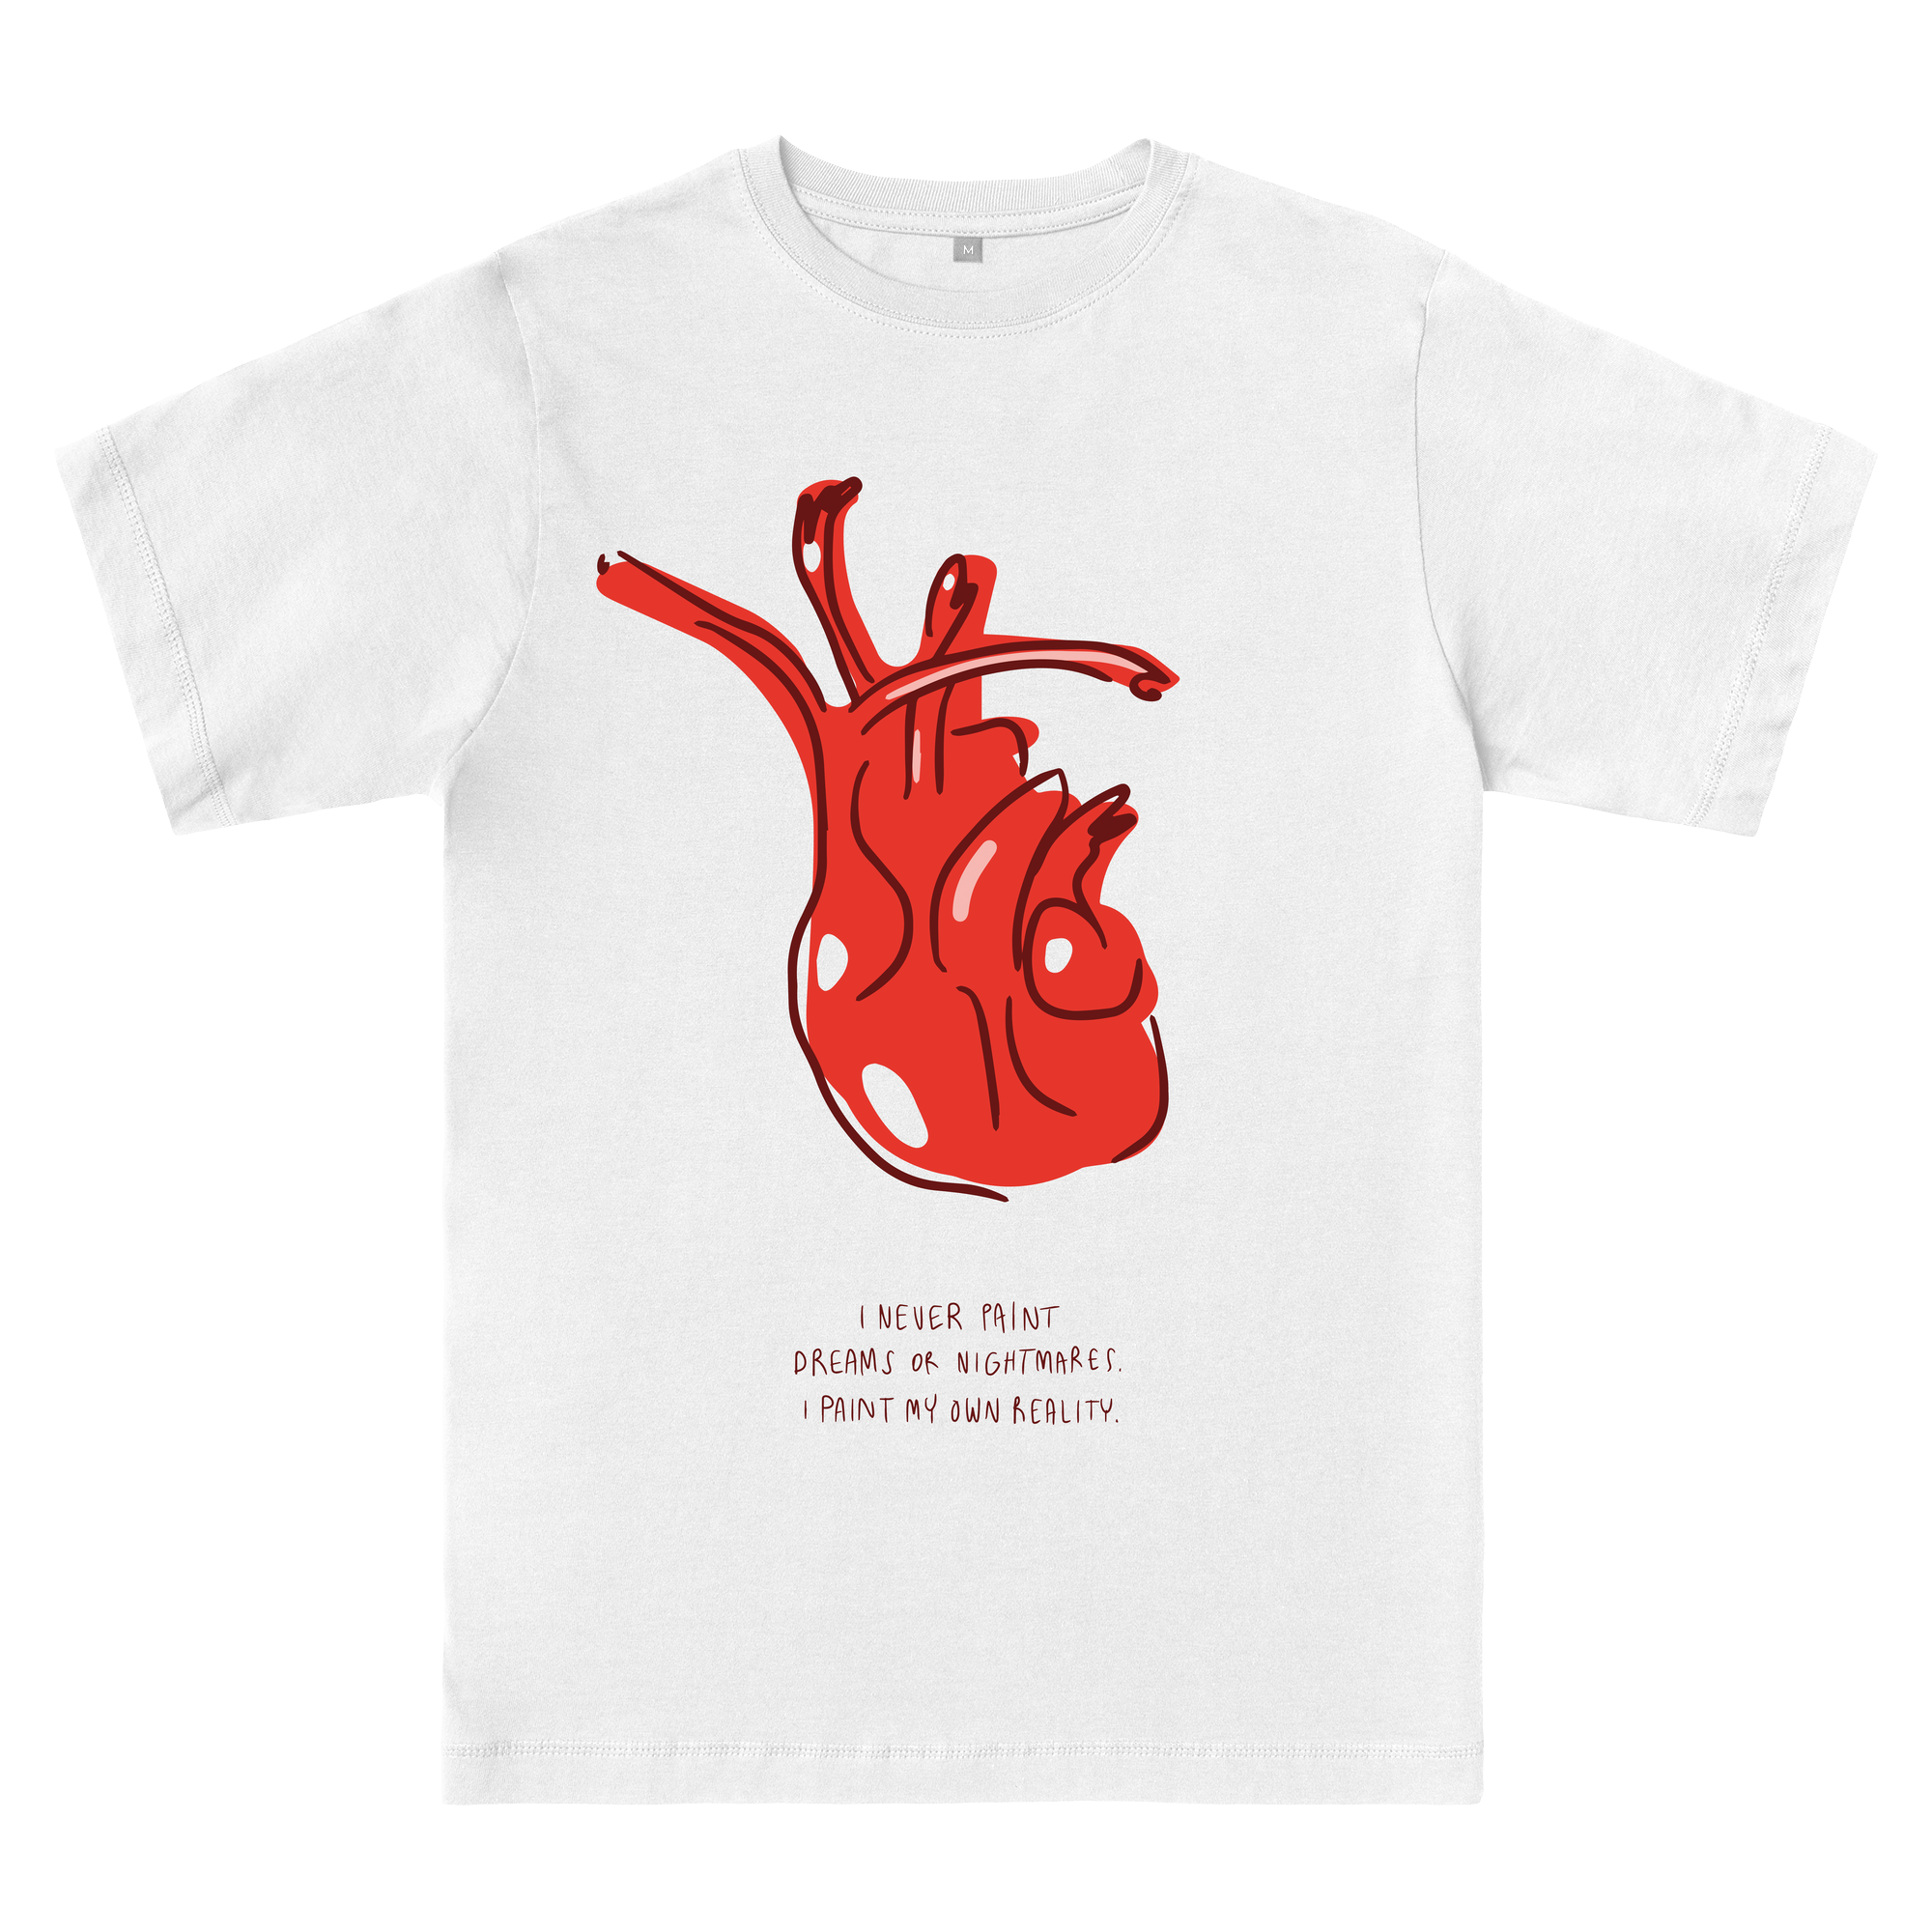 Frida's Heart T-shirt design by Silvana Mariani